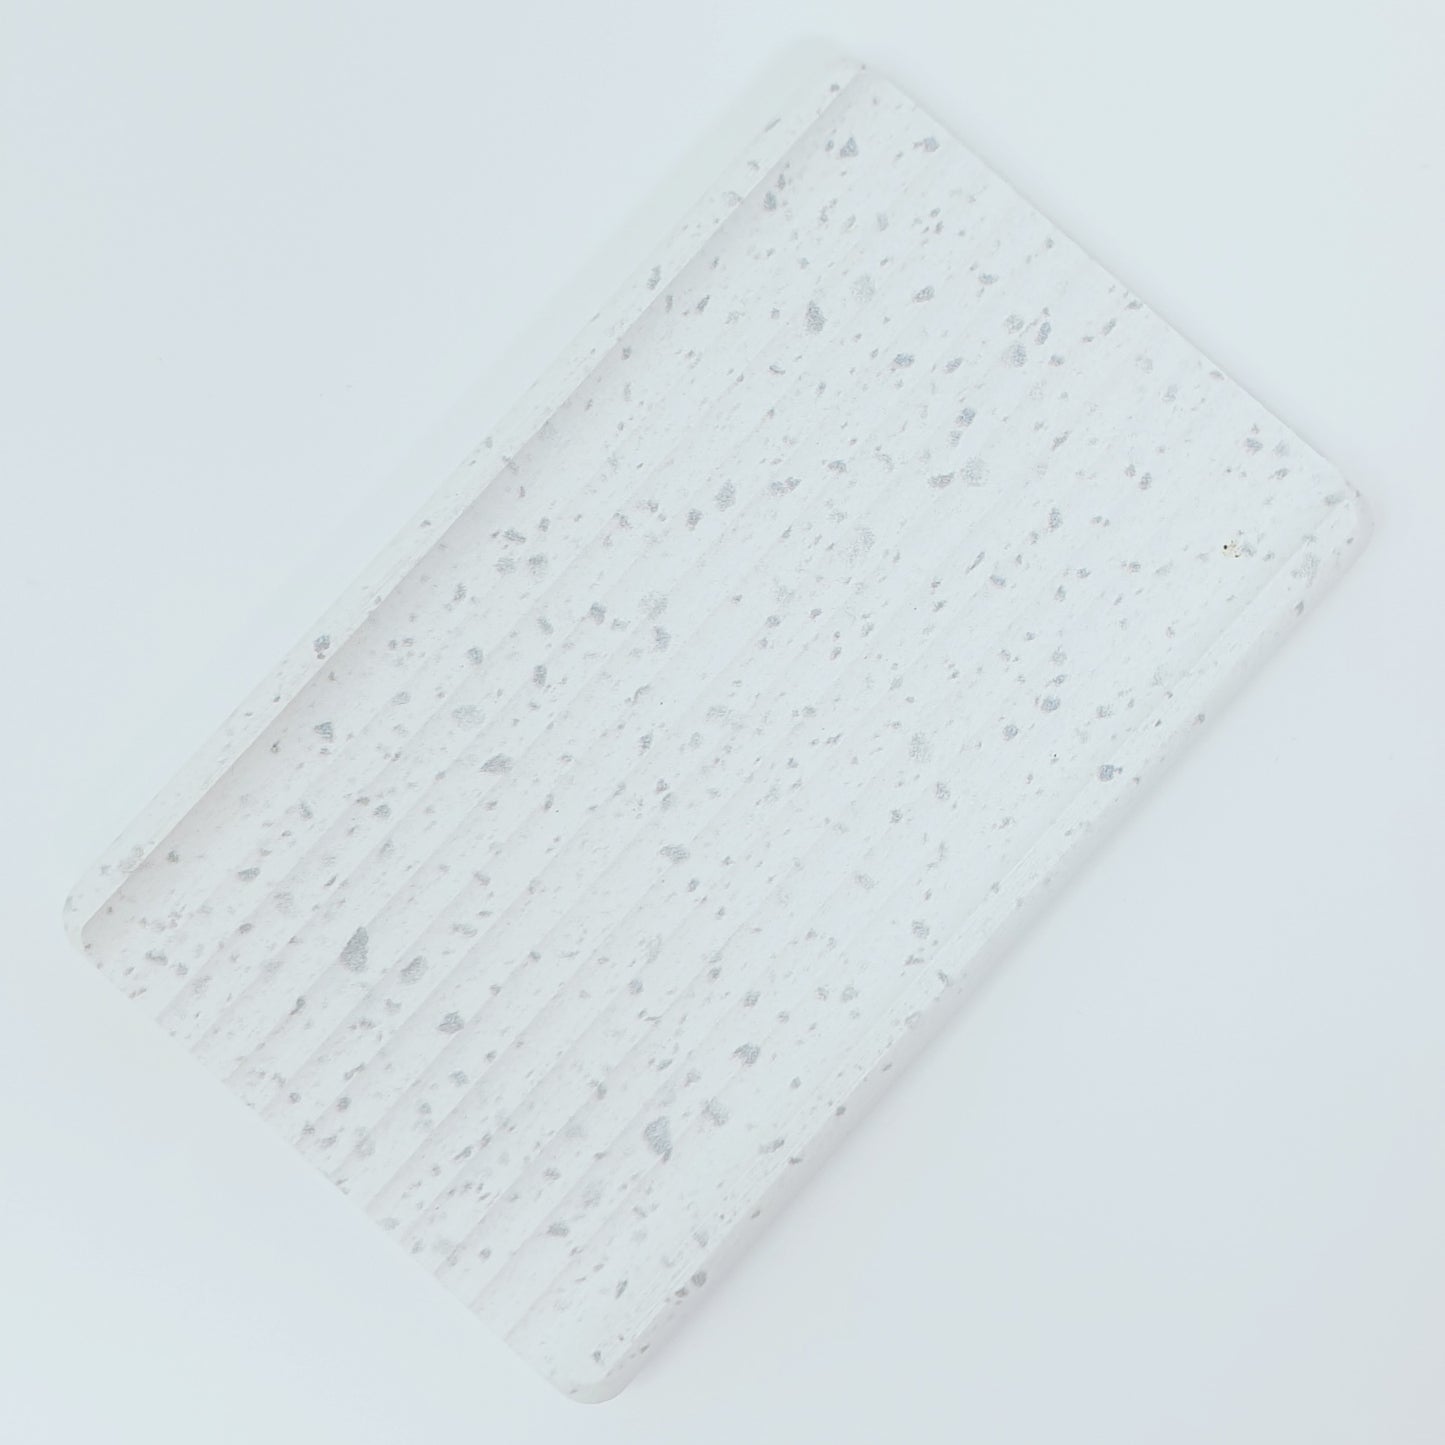 SEIFENABLAGE AUS NATURSTEIN, 100% Kieselsteinerde, ca. 13x8x1,4 cm, für das plastikfreie Badezimmer